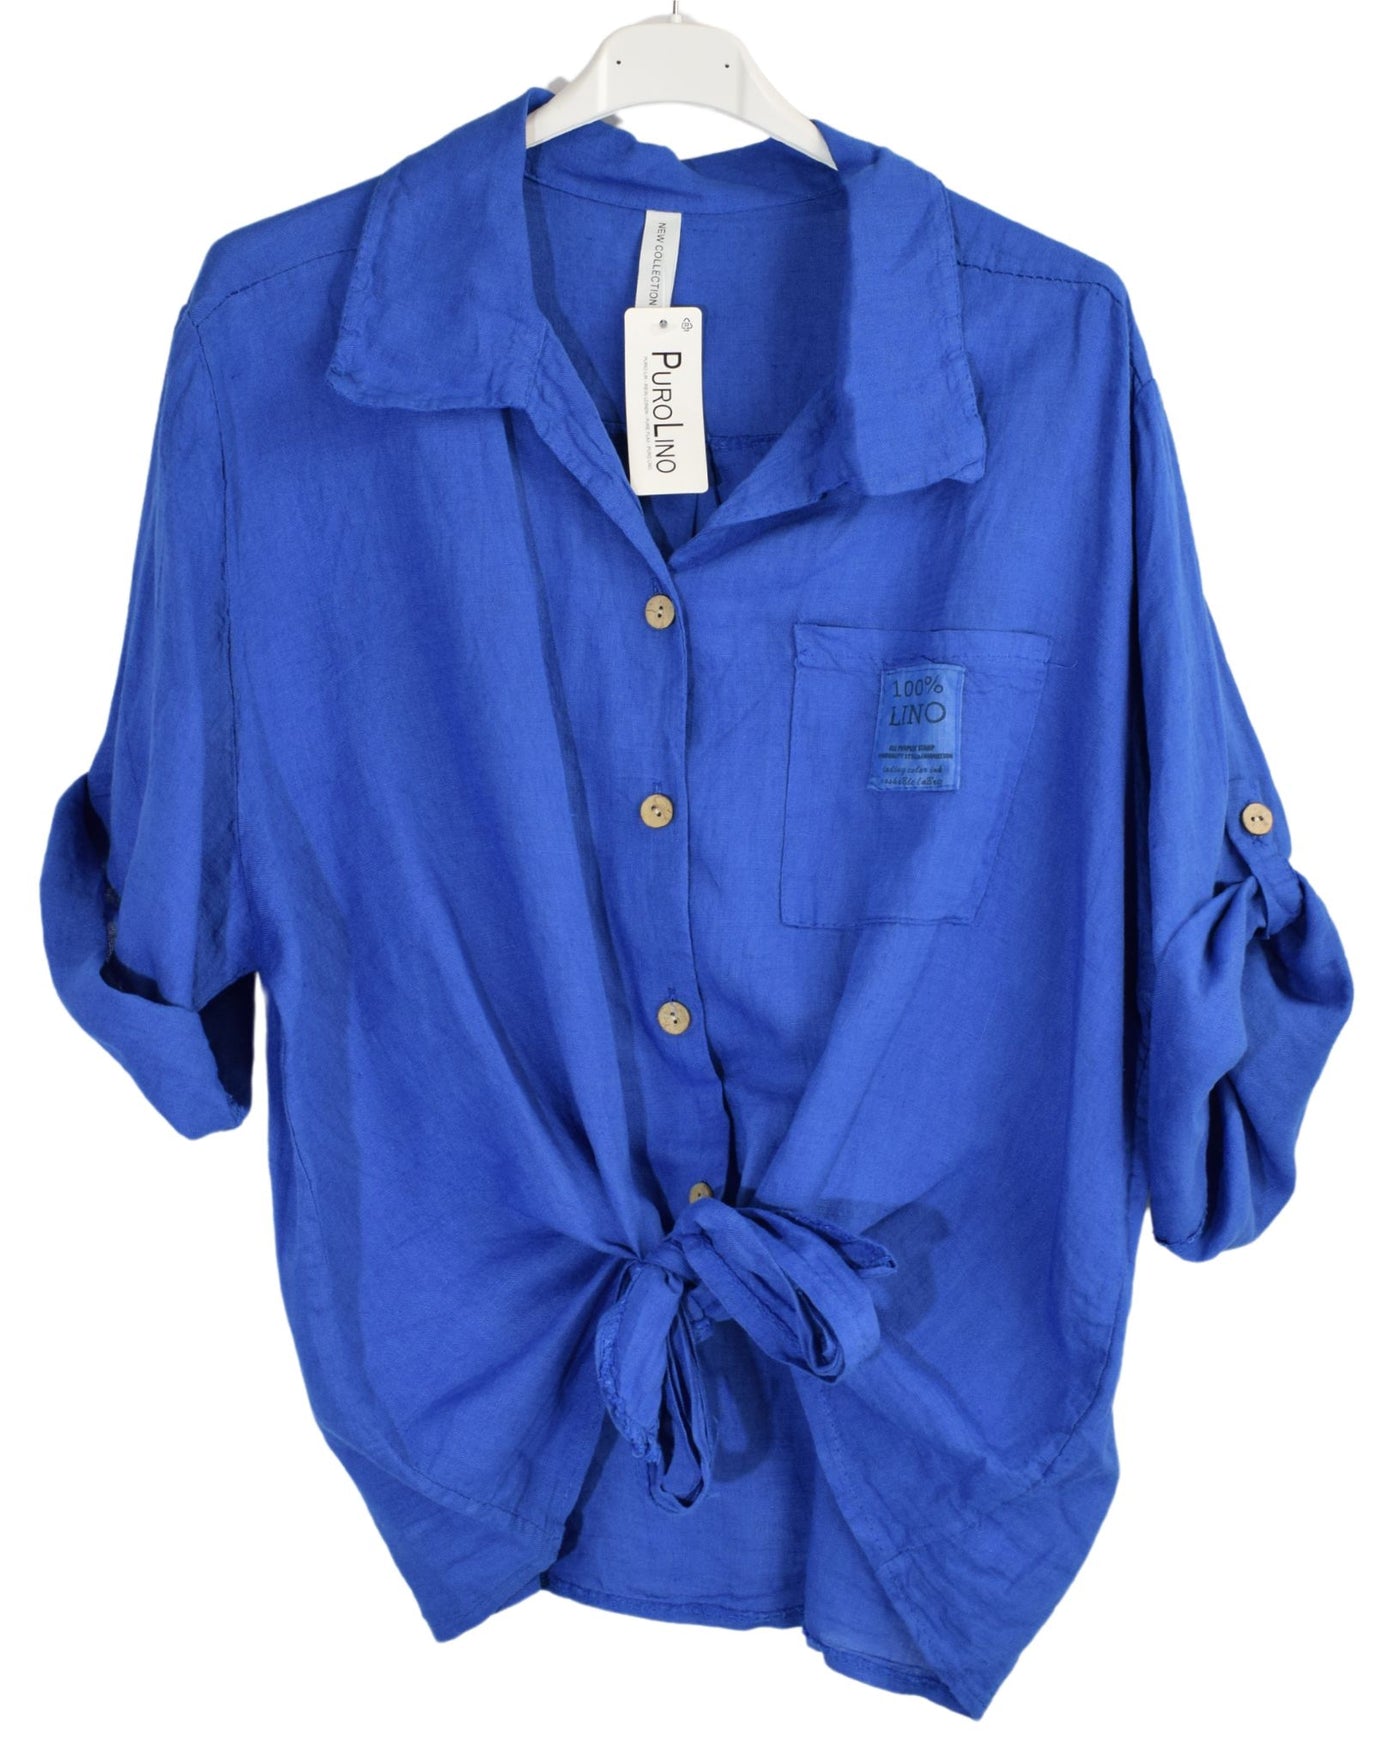 Linen Button Up Tie Front Collared Shirt Summer Lightweight Linen Shirt Top